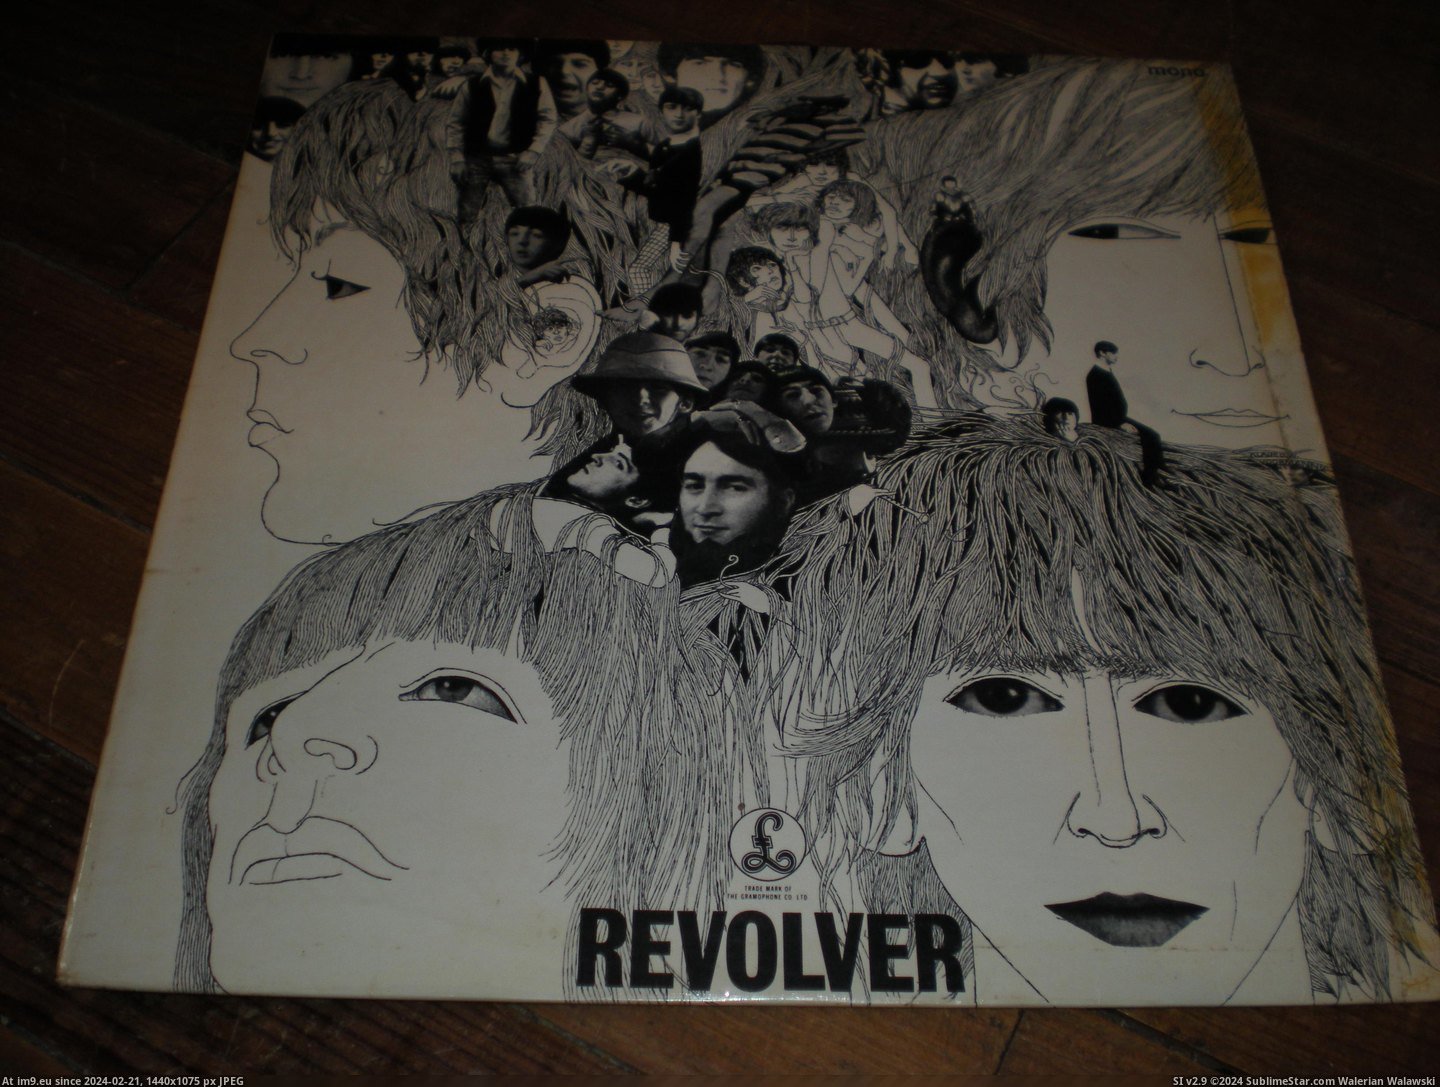  #Revolver  Revolver-2-2 6 Pic. (Obraz z album new 1))